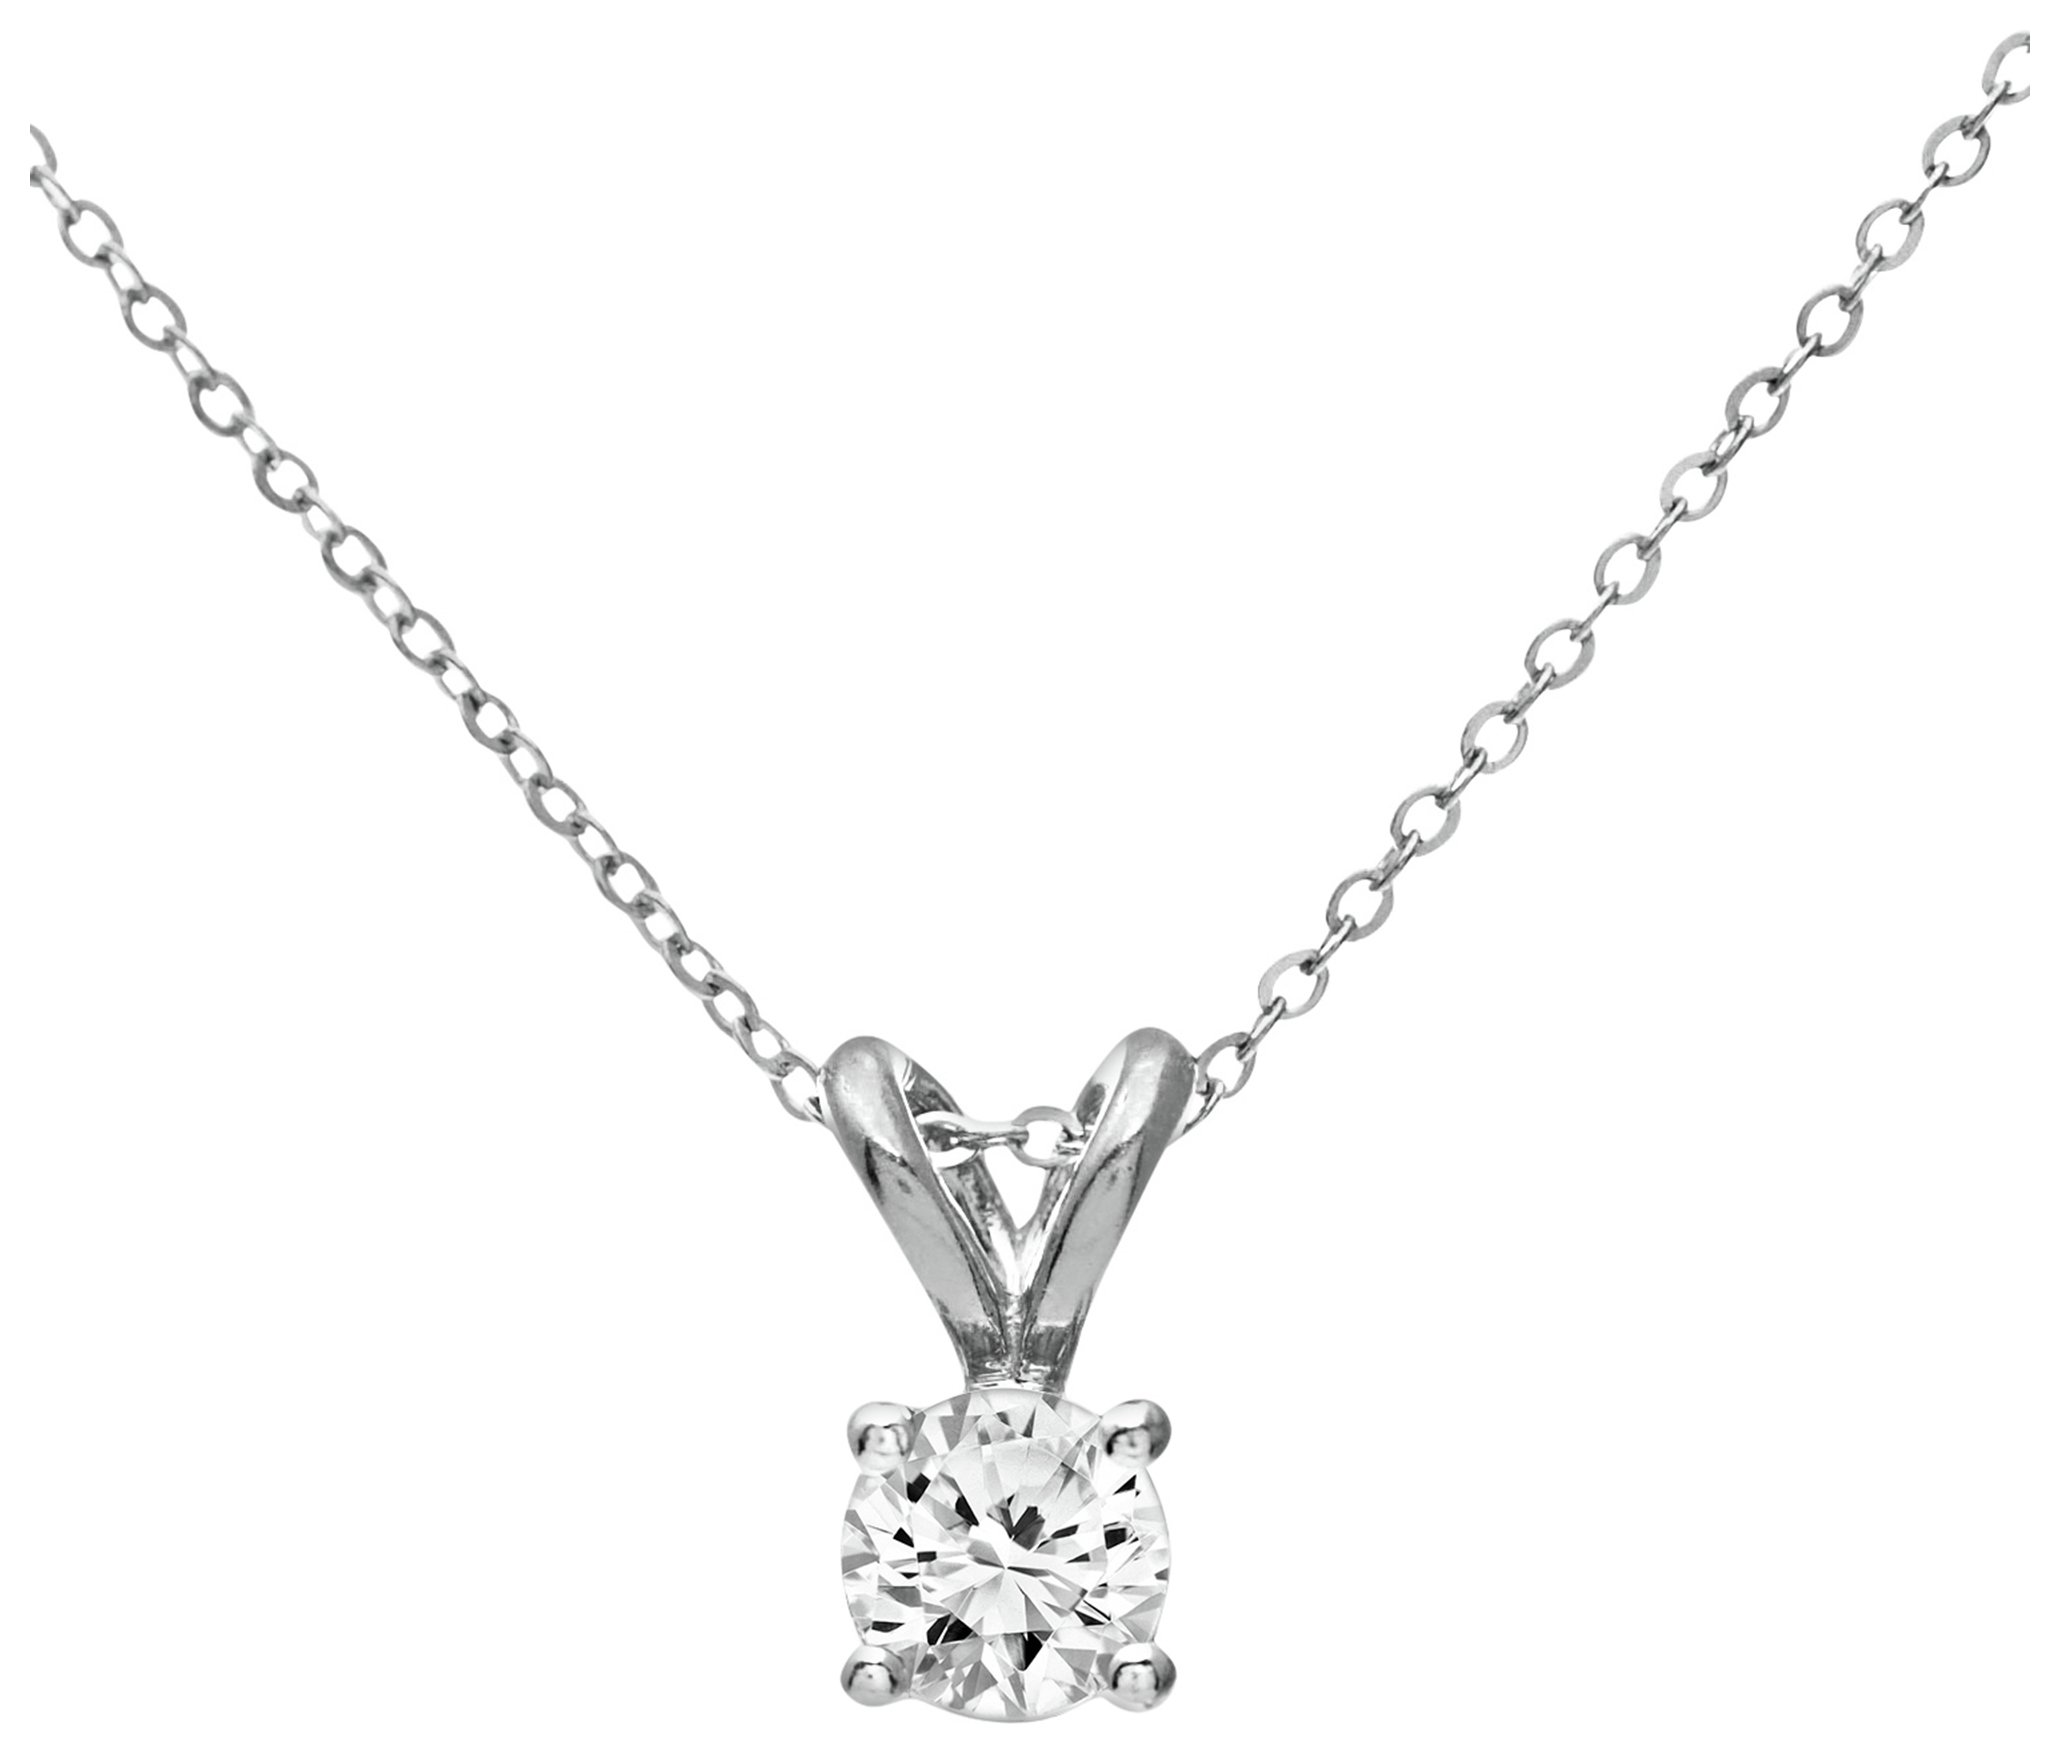 Revere 9ct White Gold Diamond Pendant 18 Inch Necklace